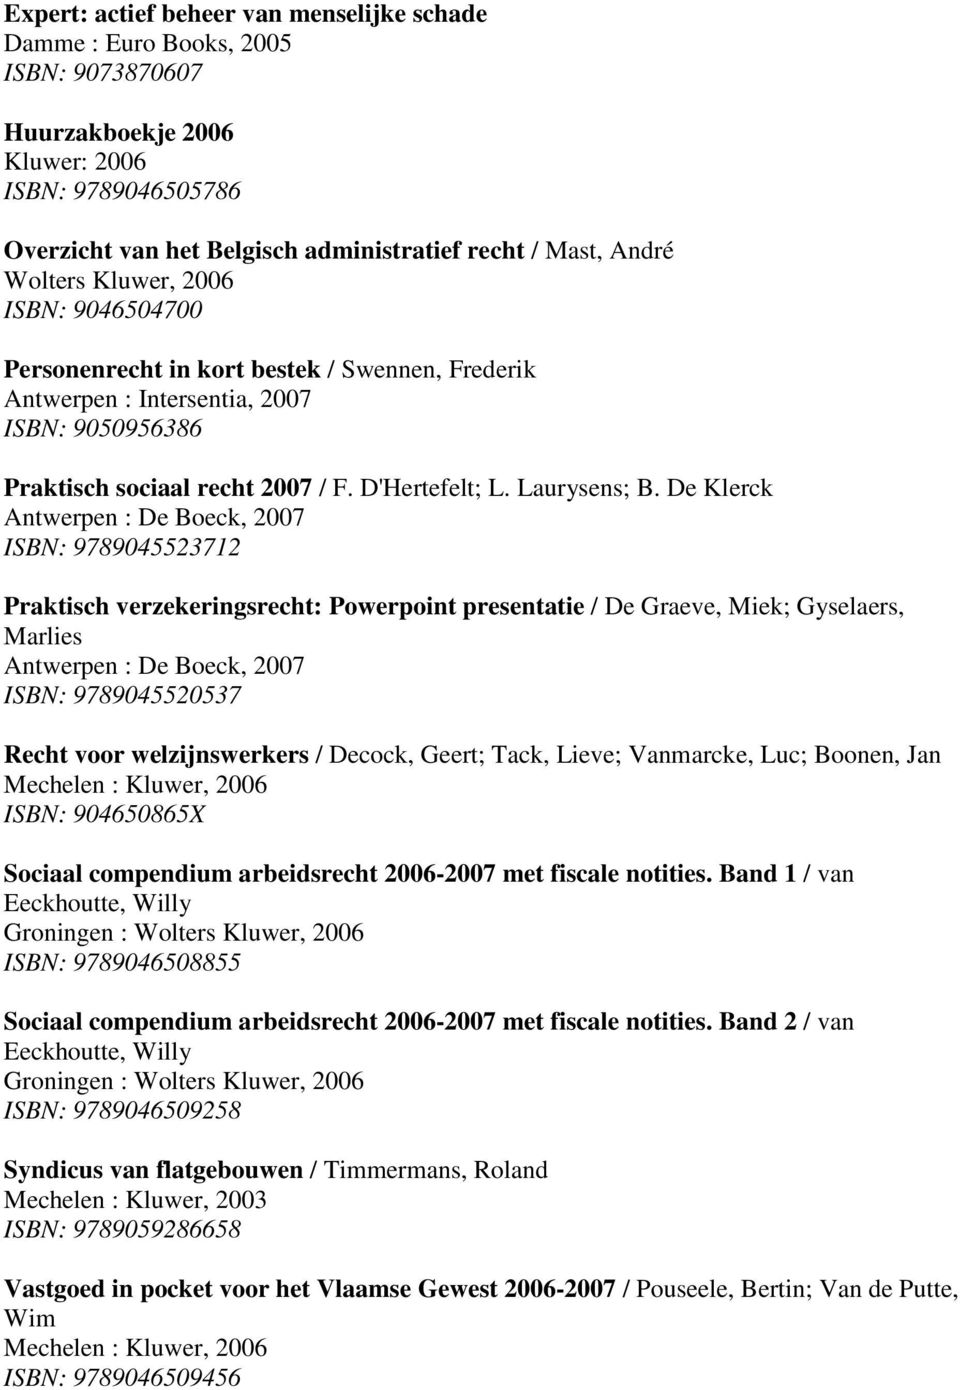 De Klerck Antwerpen : De Boeck, 2007 ISBN: 9789045523712 Praktisch verzekeringsrecht: Powerpoint presentatie / De Graeve, Miek; Gyselaers, Marlies Antwerpen : De Boeck, 2007 ISBN: 9789045520537 Recht